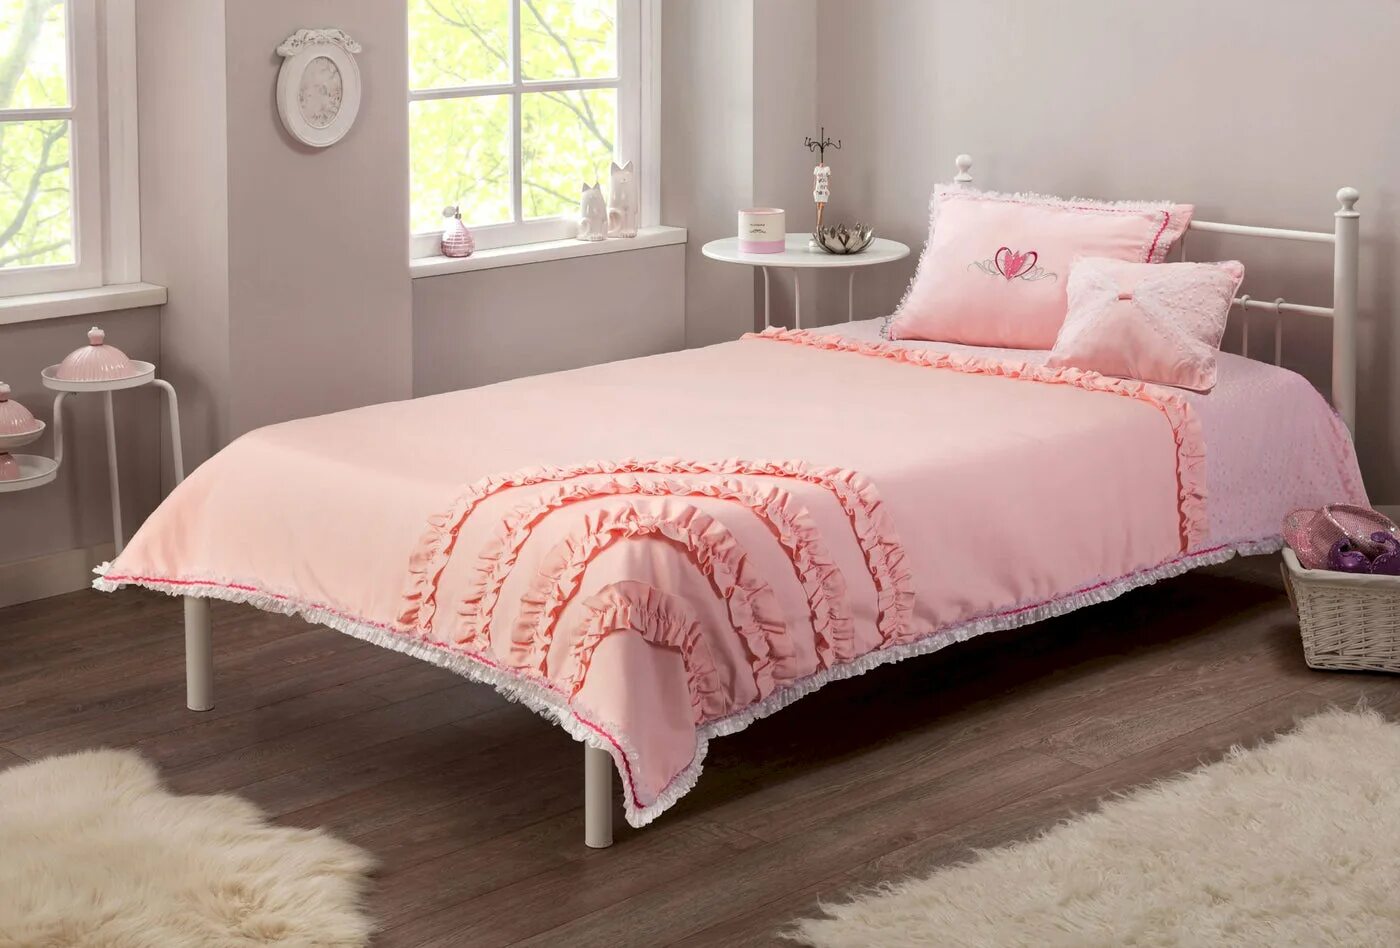 Вайлдберриз покрывало на кровать. Розовое покрывало на кровать. Розовое покрывало в интерьере. Грязно розовое покрывало на кровать. Розовое покрывало на кровать для девочки.